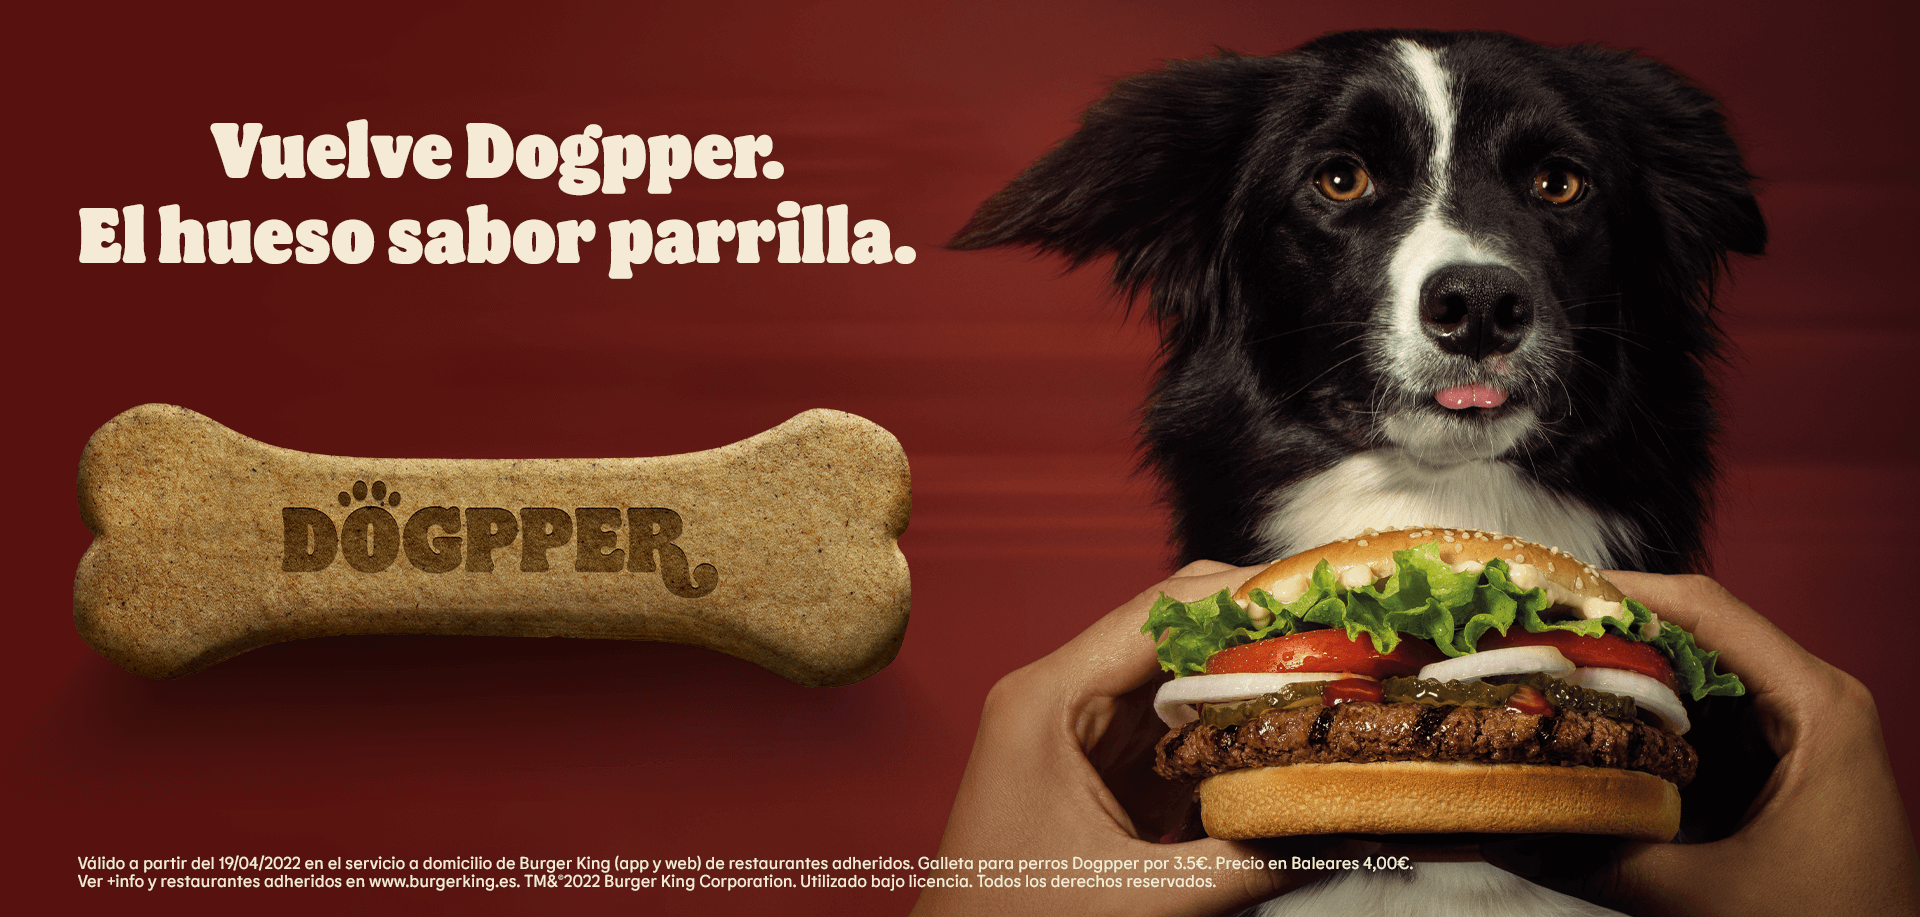 Galleta para perros Dogpper por 3,50€ (4€ en Baleares) en Burger King (oferta válida en pedidos en el servicio a domicilio de Burger King (app y web))